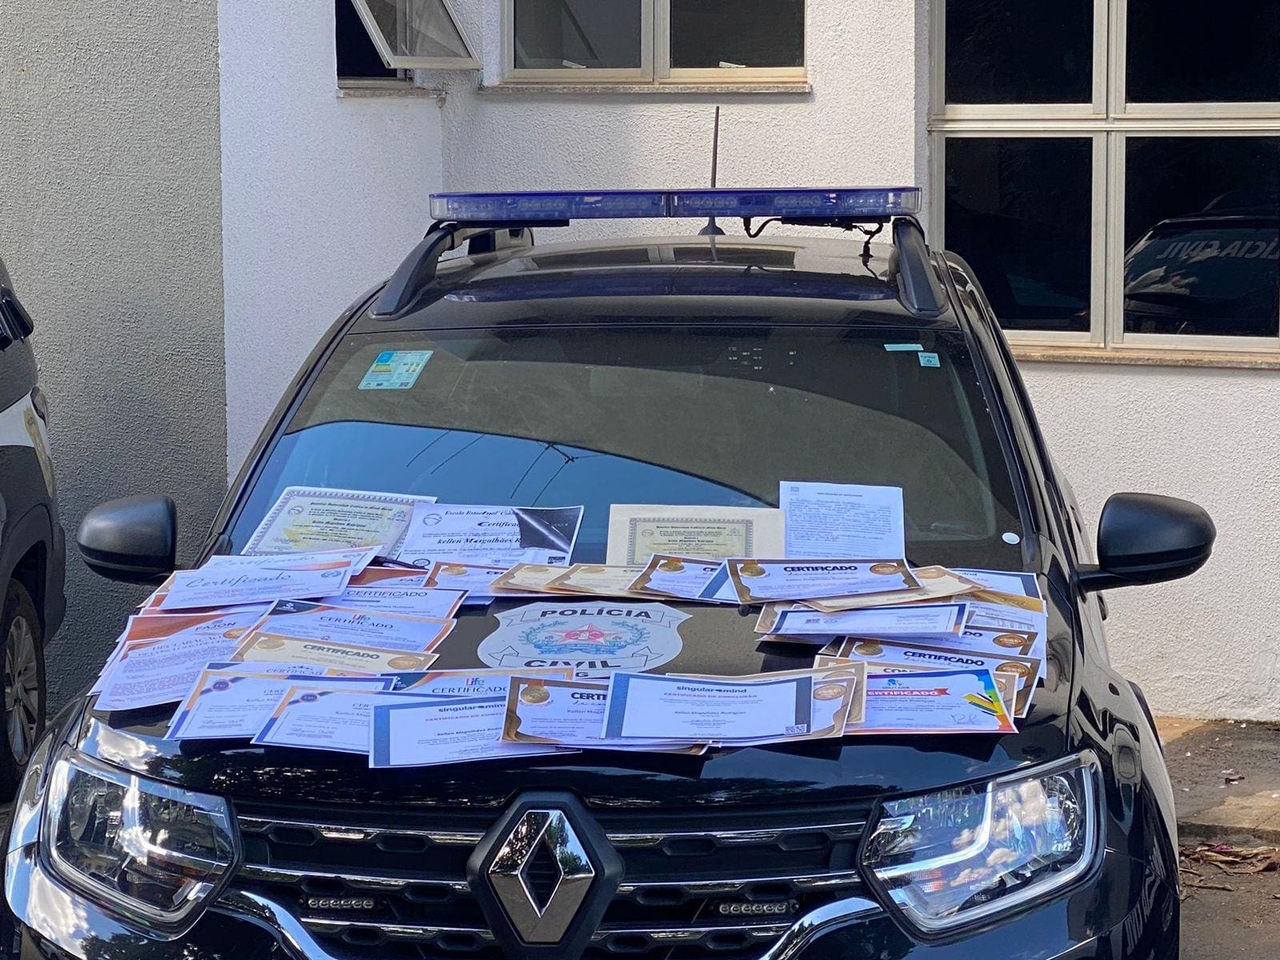 Polícia Civil encontrou diversos diplomas falsos na casa da mulher